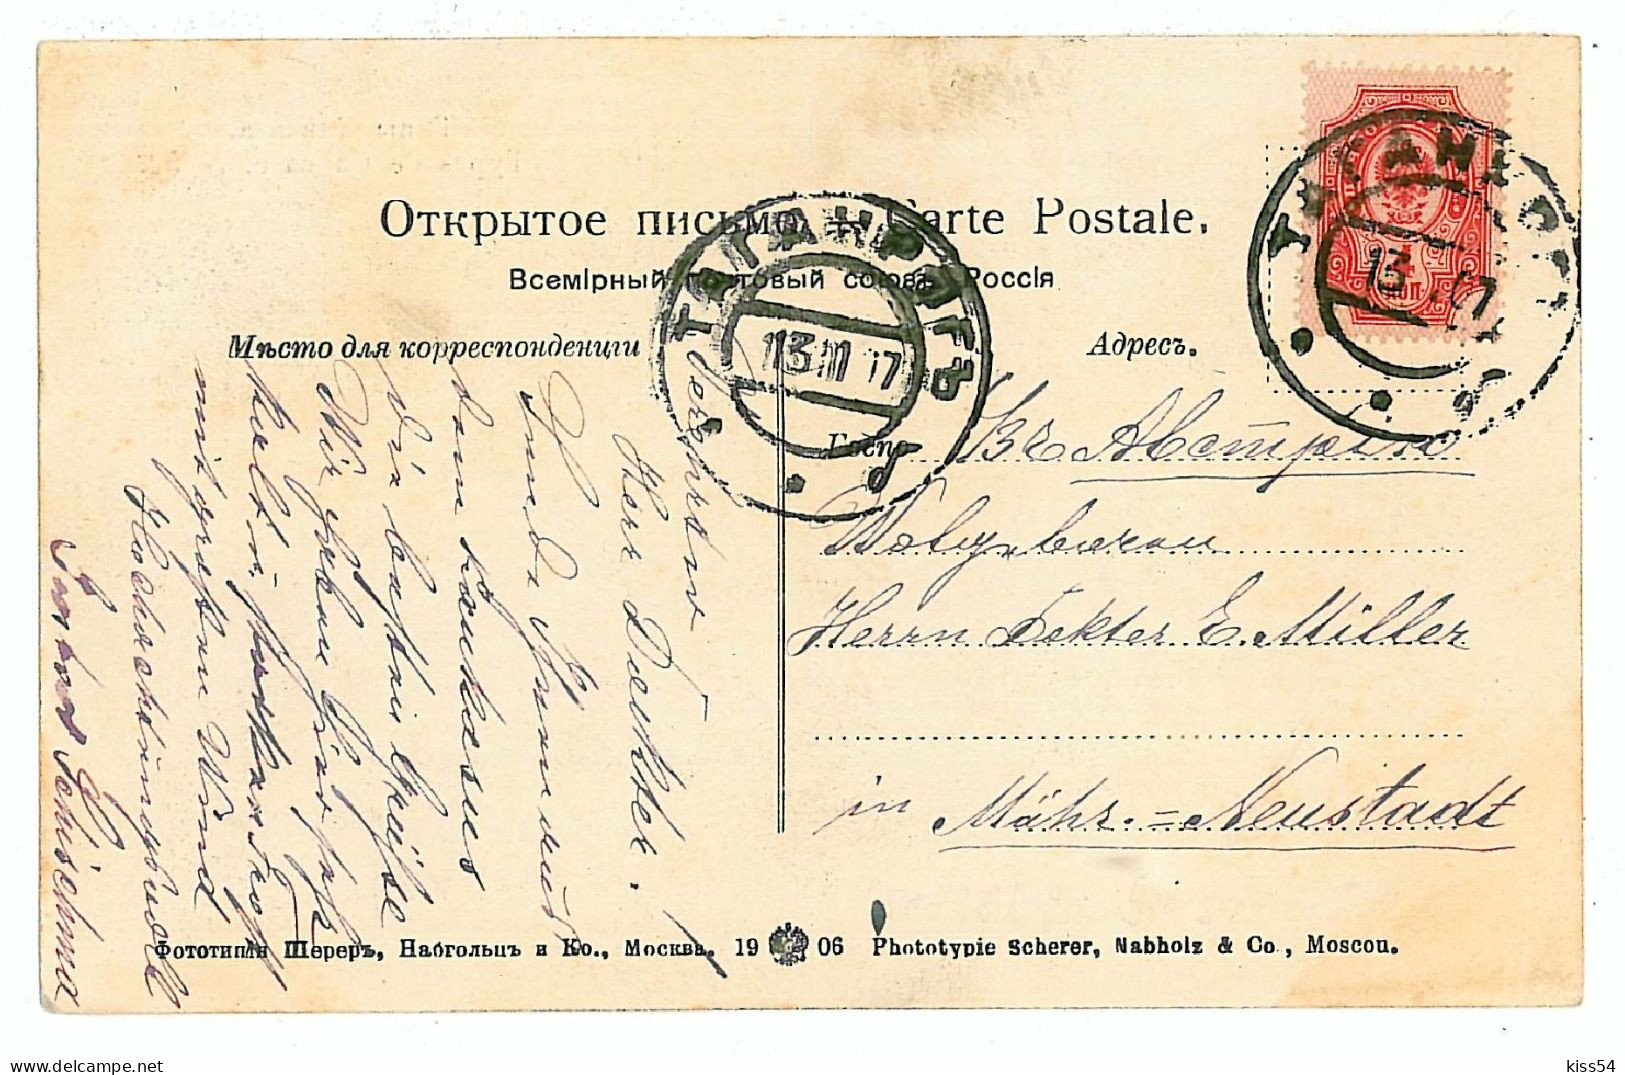 RUS 59 - 8287 ETHNICS From CAUCASSUS, Russia - Old Postcard - Used - 1907 - Russie